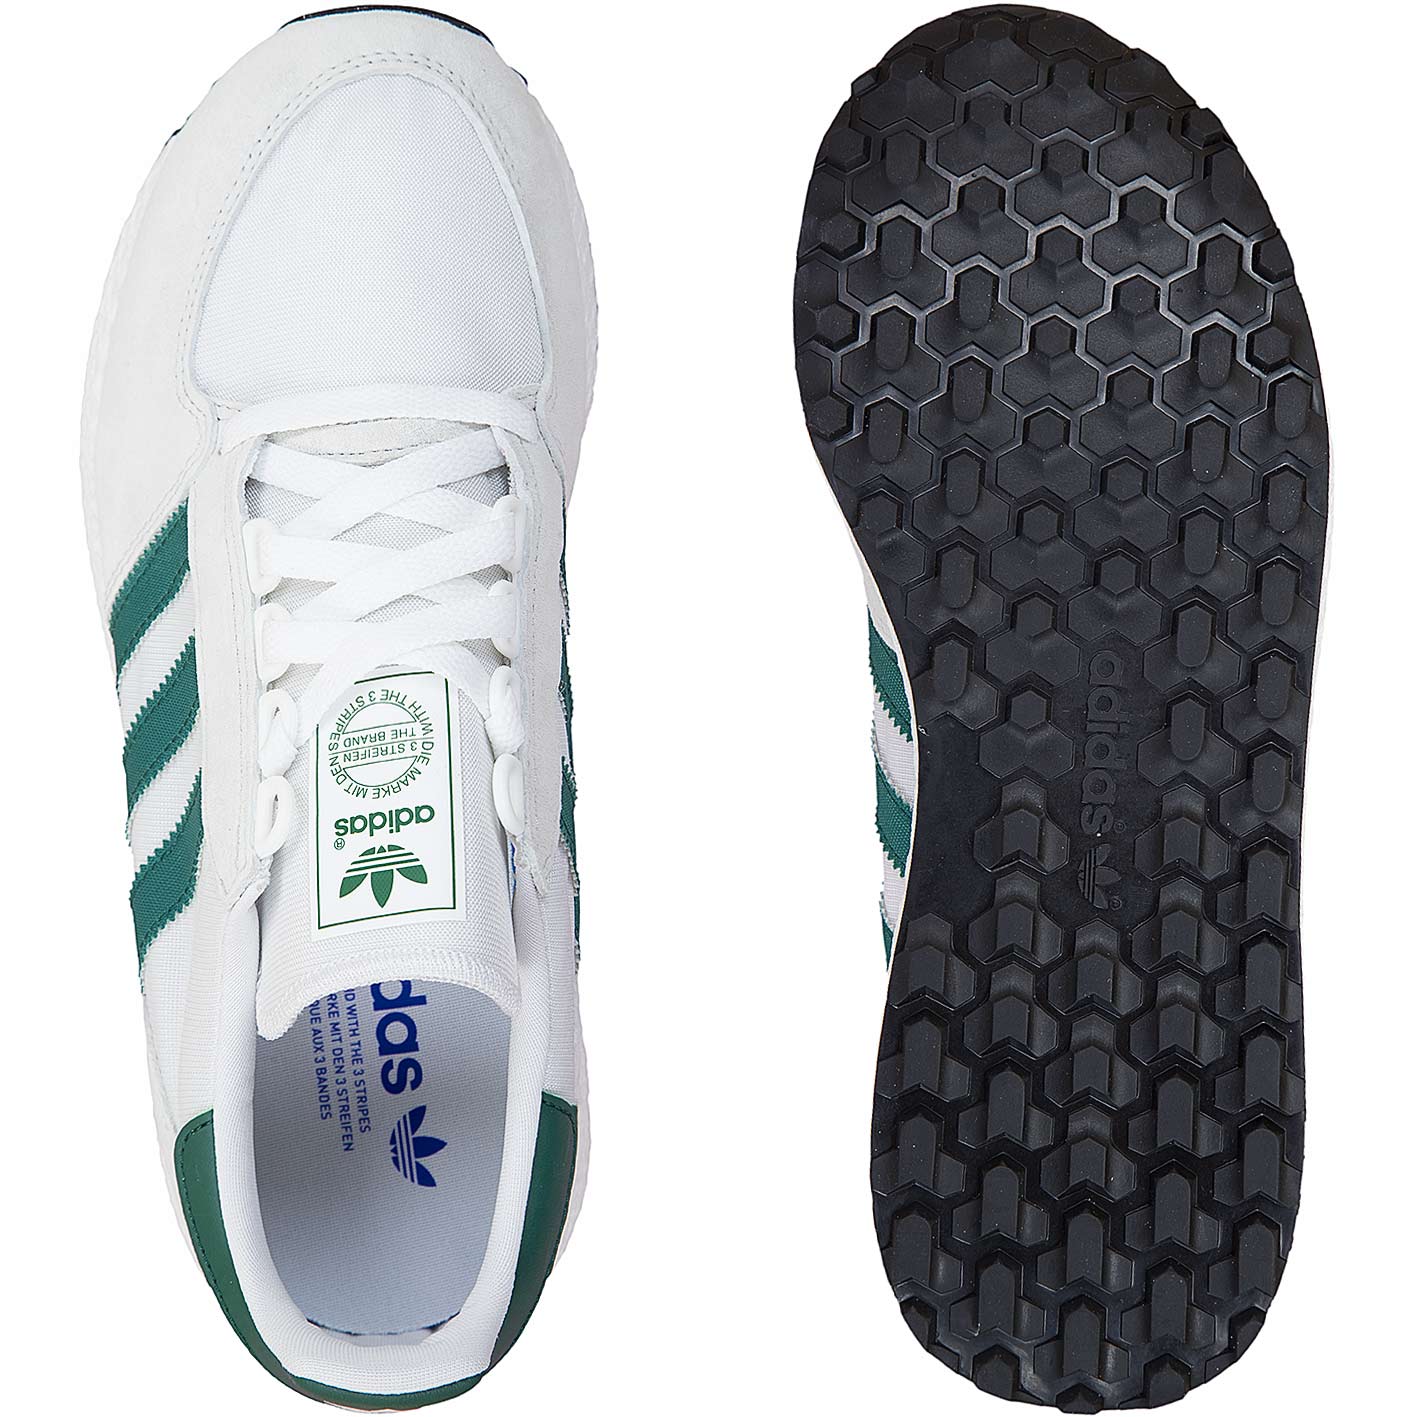 ☆ Adidas Originals Sneaker Forest Grove weiß/grün - bestellen!